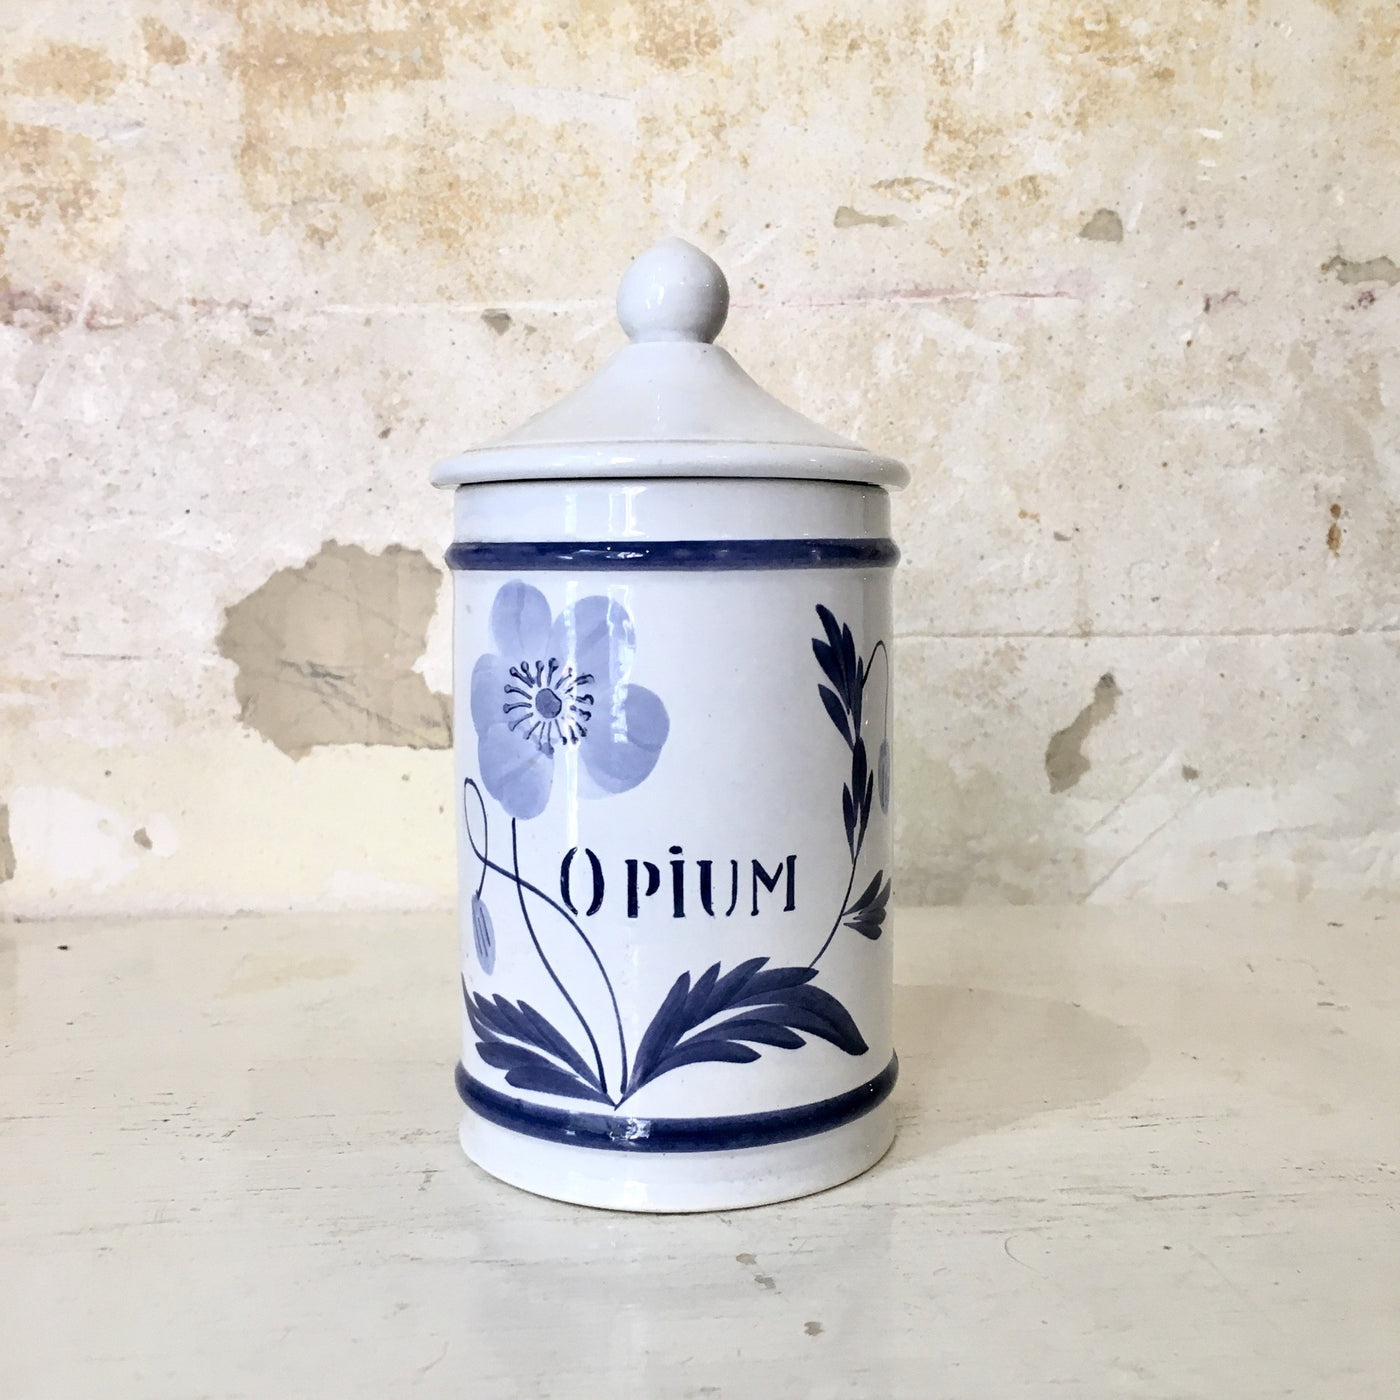 Pot d'apothicaire Opium en faïence de Longchamp